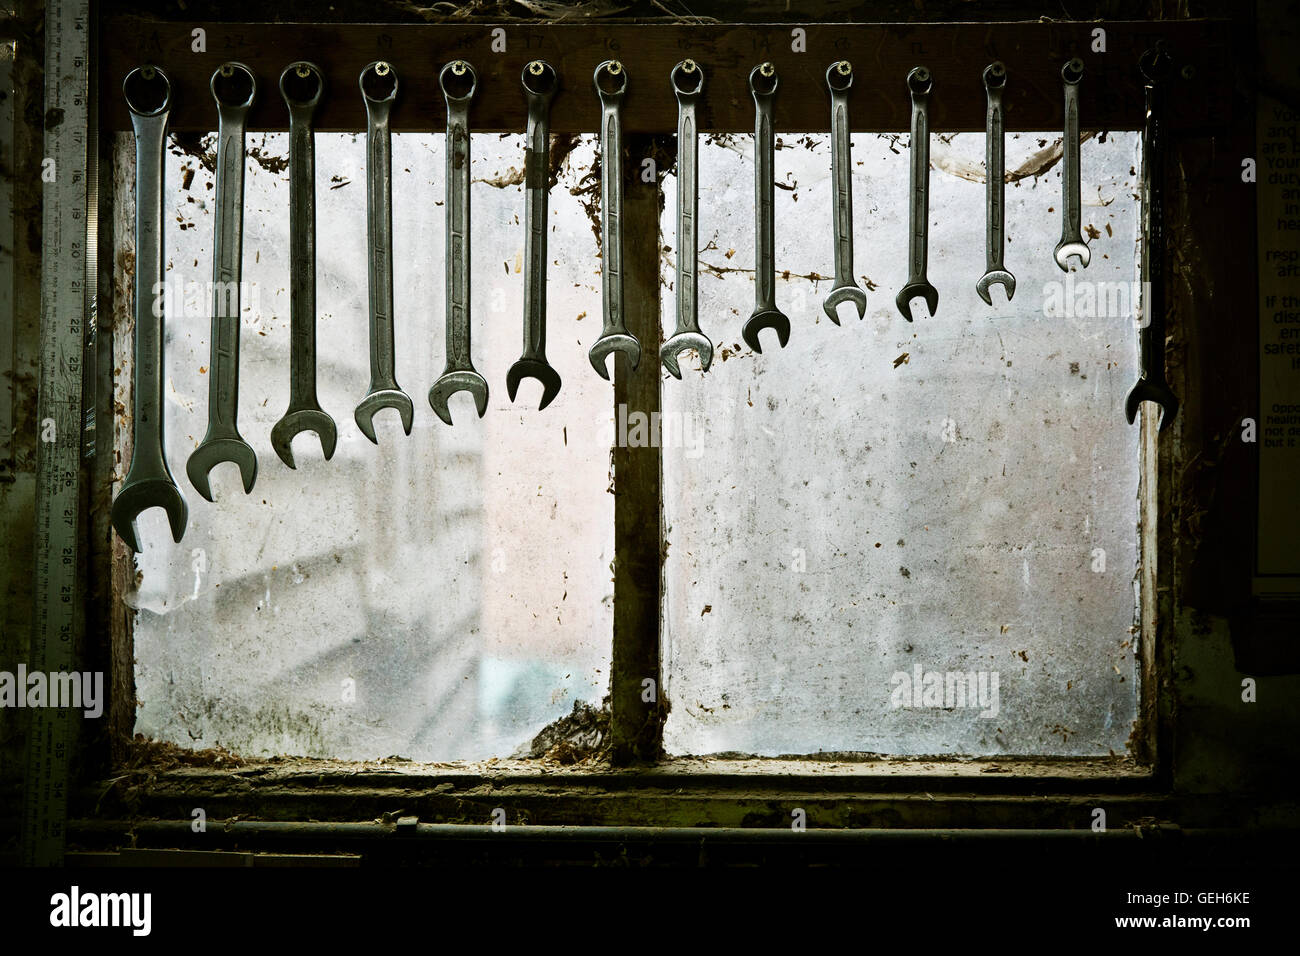 Ein Tool Rack mit Schraubenschlüsseln unterschiedlicher Größe hängen in Ordnung. Stockfoto